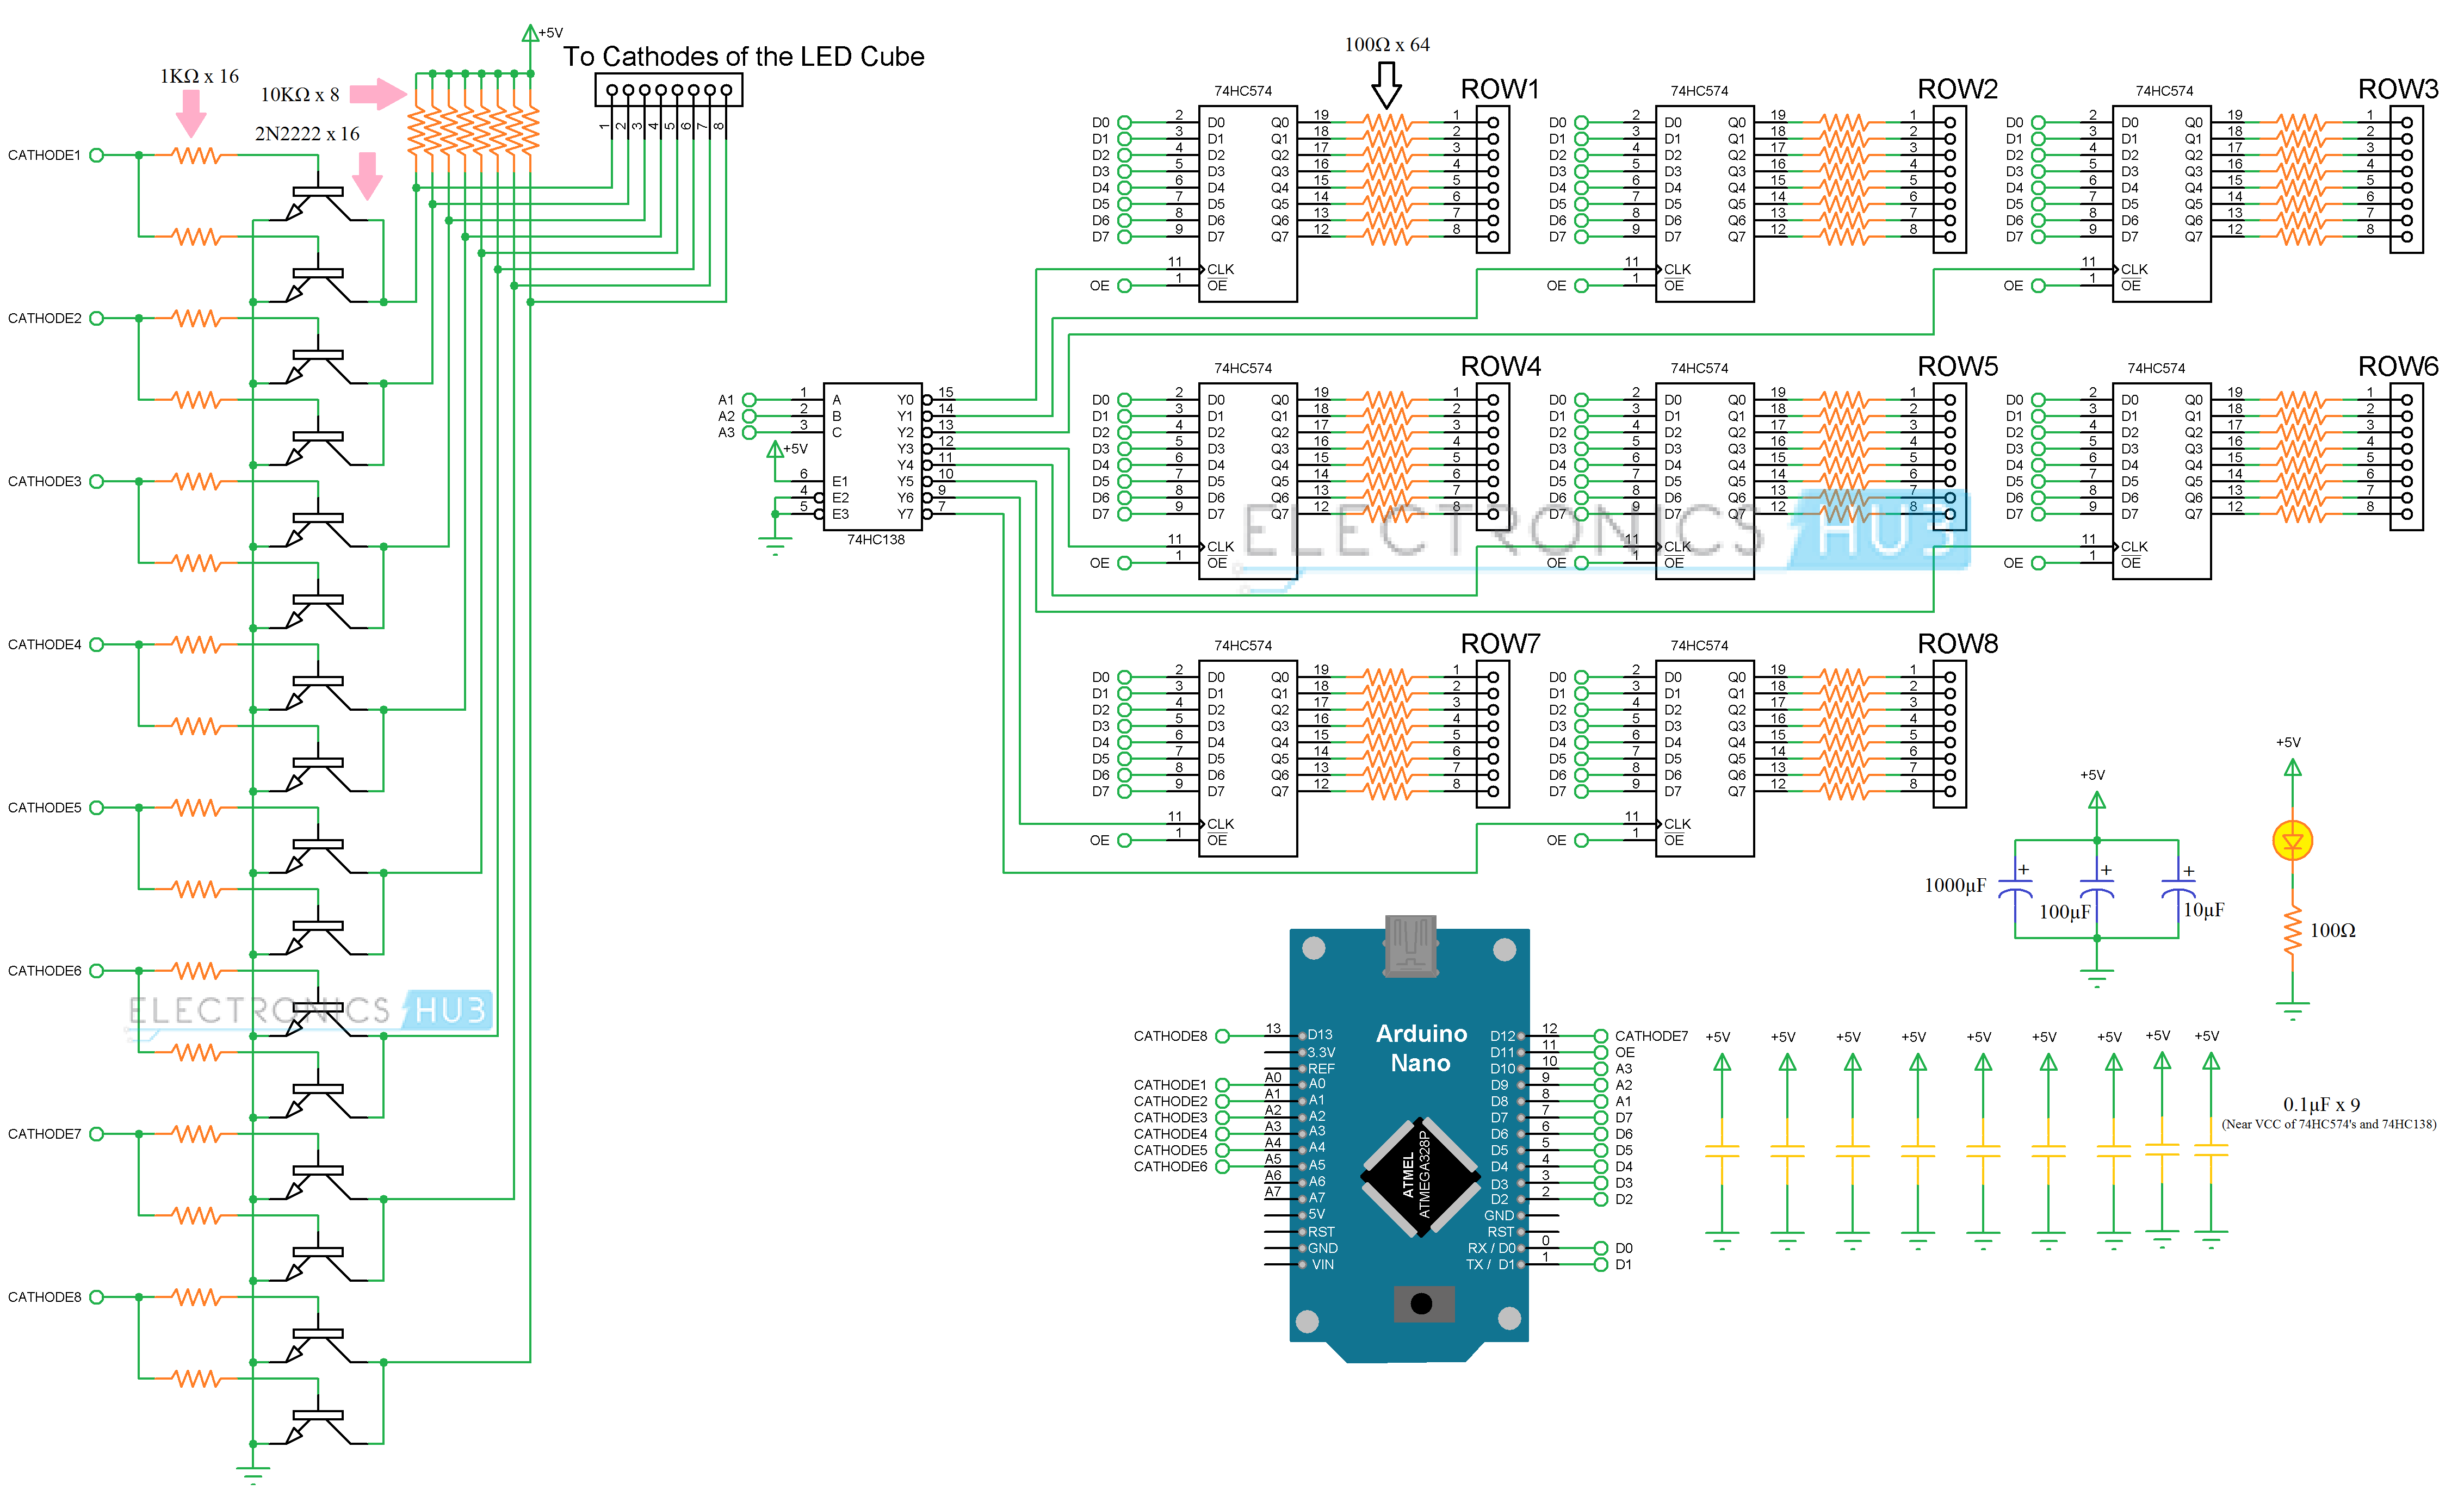 Hele tiden faglært trofast 8x8x8 LED Cube | How to build an 8x8x8 LED Cube using Arduino